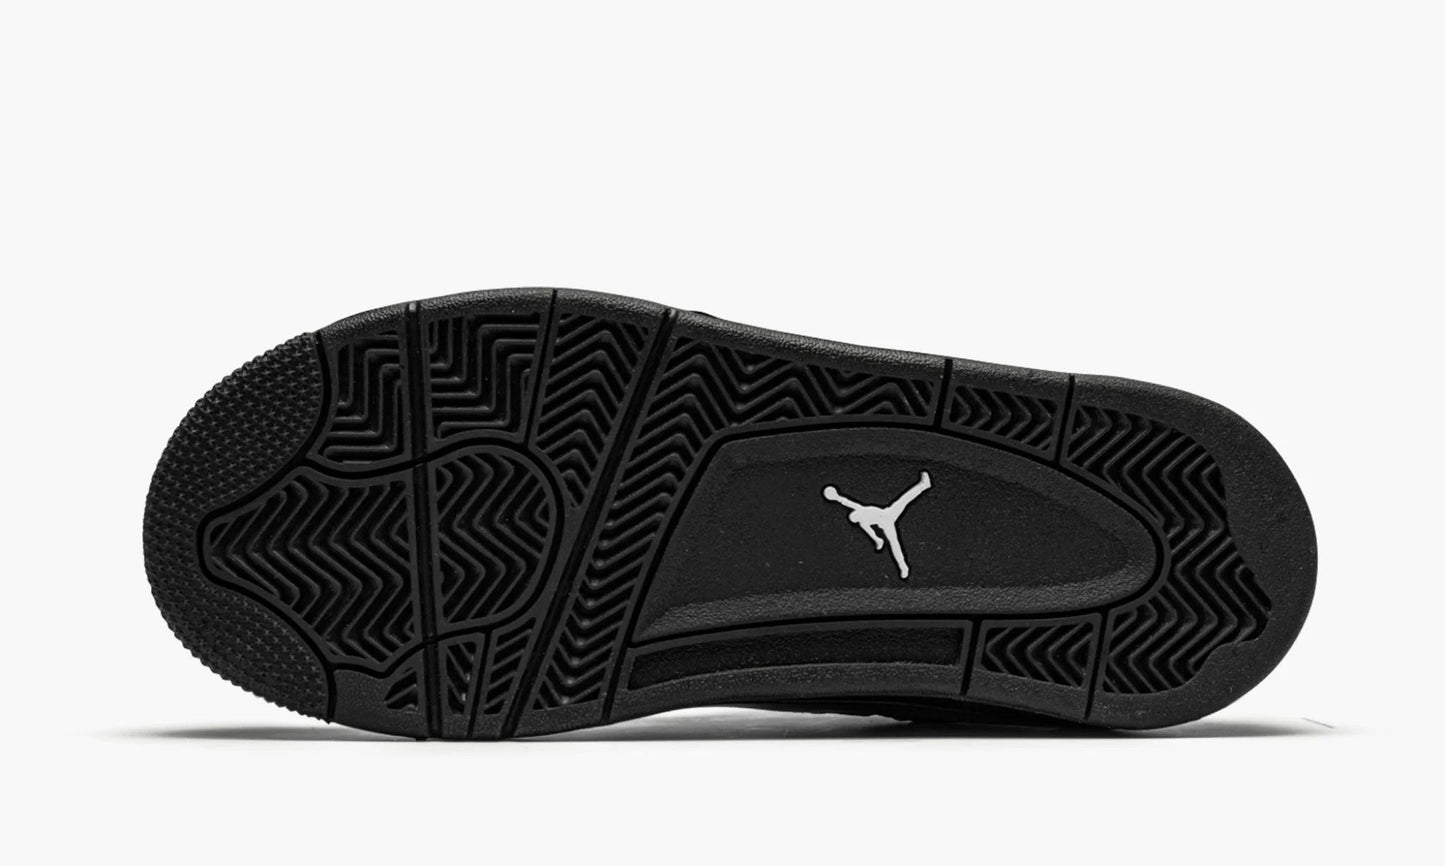 Air Jordan 4 Retro PS "Black Cat"